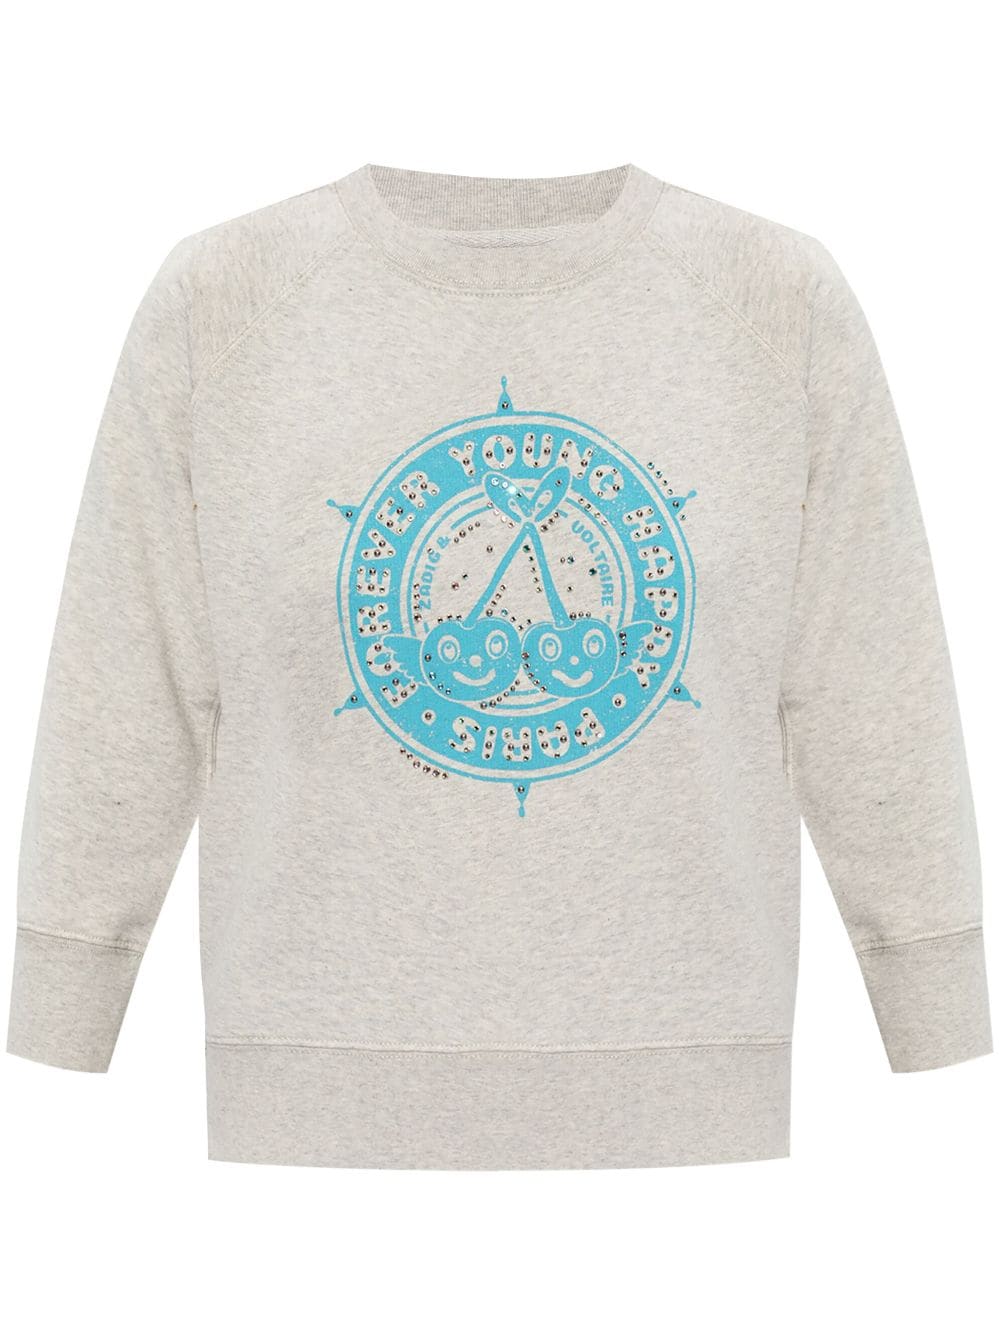 Zadig & Voltaire Cameron Graphic Print Sweatshirt In Grey